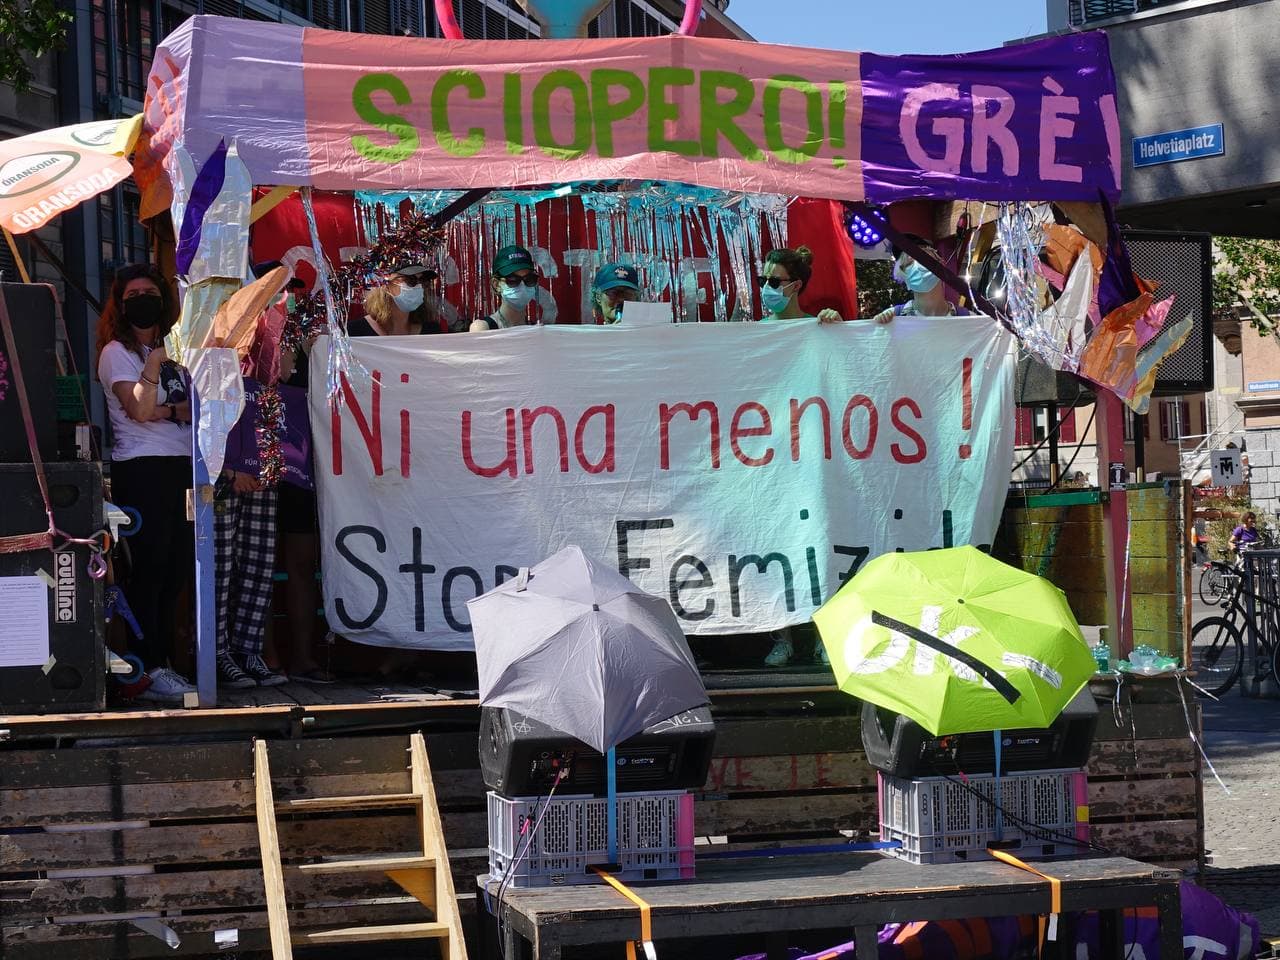 Foto der Bühne auf dem Ni UNa Menos Platz, ganz viele FLINTA mit Sonnebrille Caps und Maske halten ein Transparent hoch auf dem steht "Ni una menos! Stopp Femizide" eine Frau hält eine Rede. Die Bühne ist mit Lametta und Banner verziert auf dem Steht "Sciopero! Grève! …"